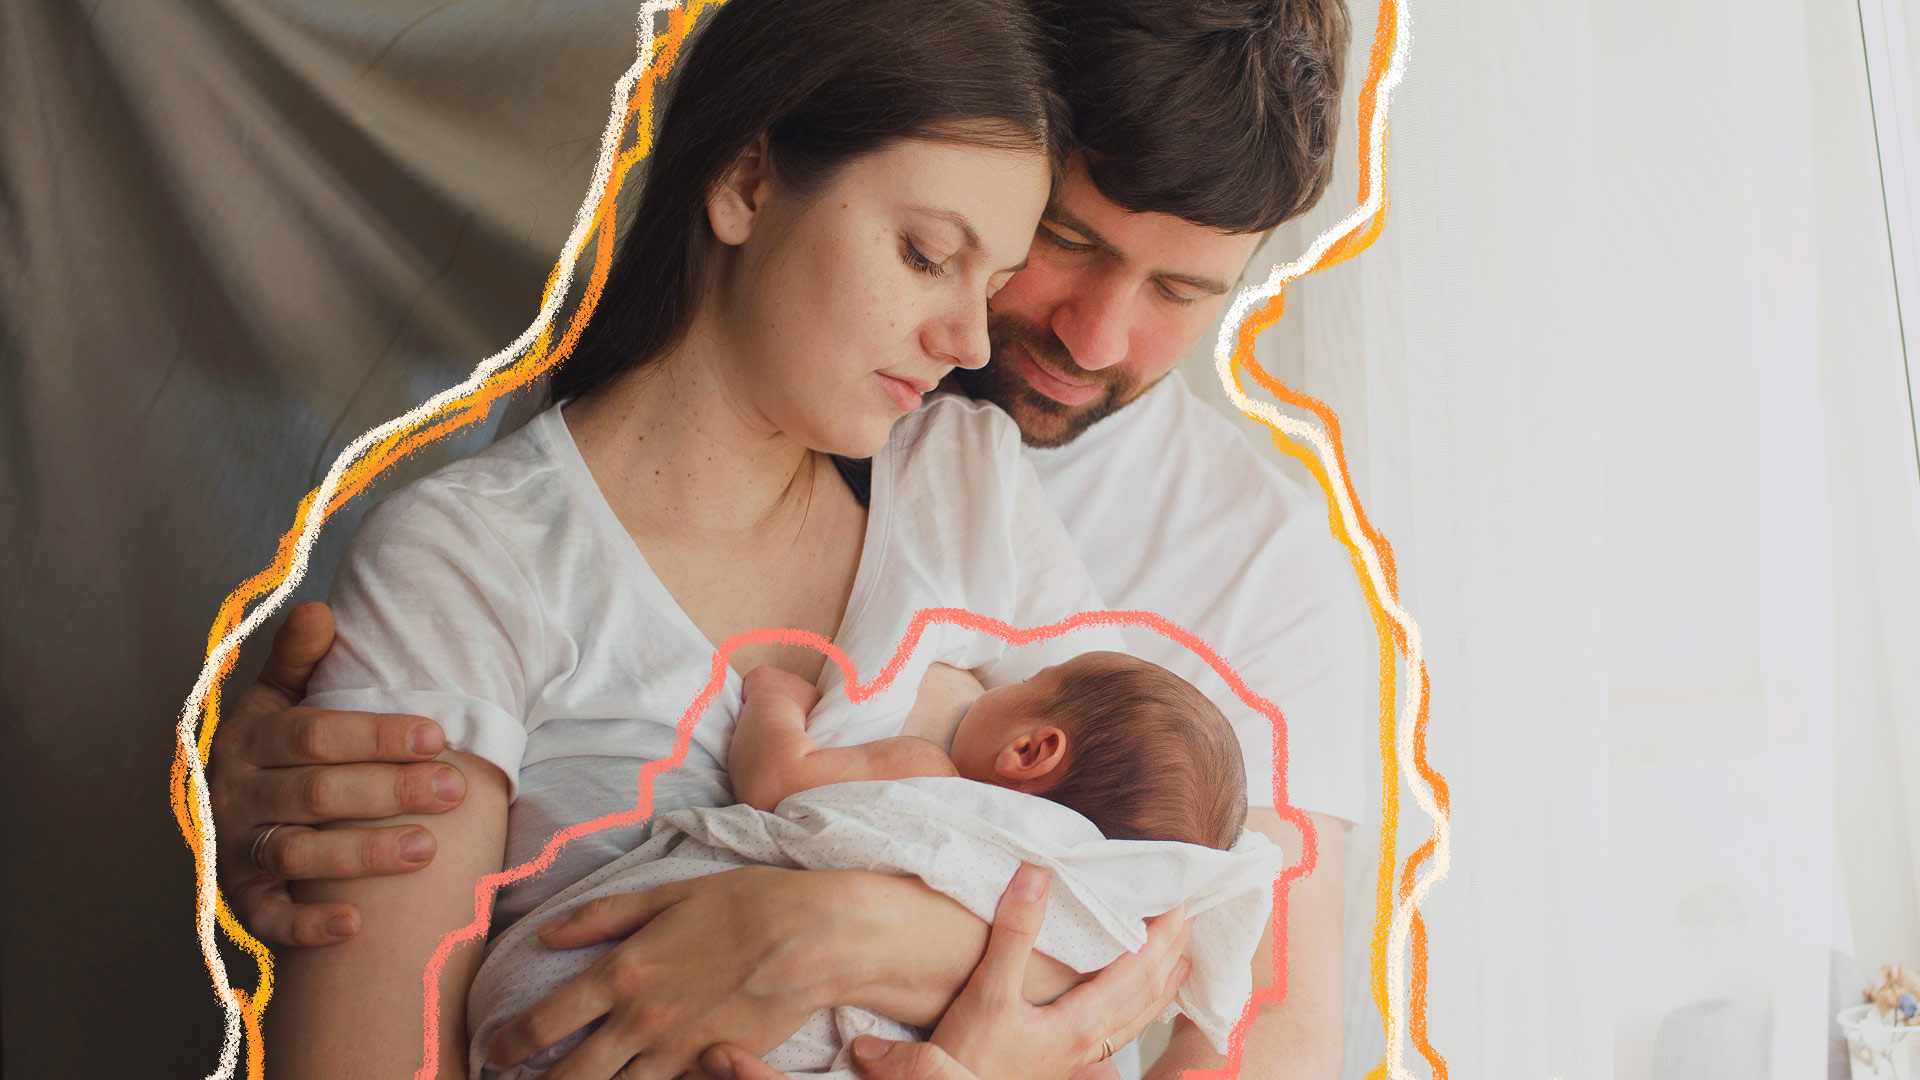 Imagem de um família branca: mãe de cabelos pretos e lisos segura o bebê no colo, e o pai está ao lado